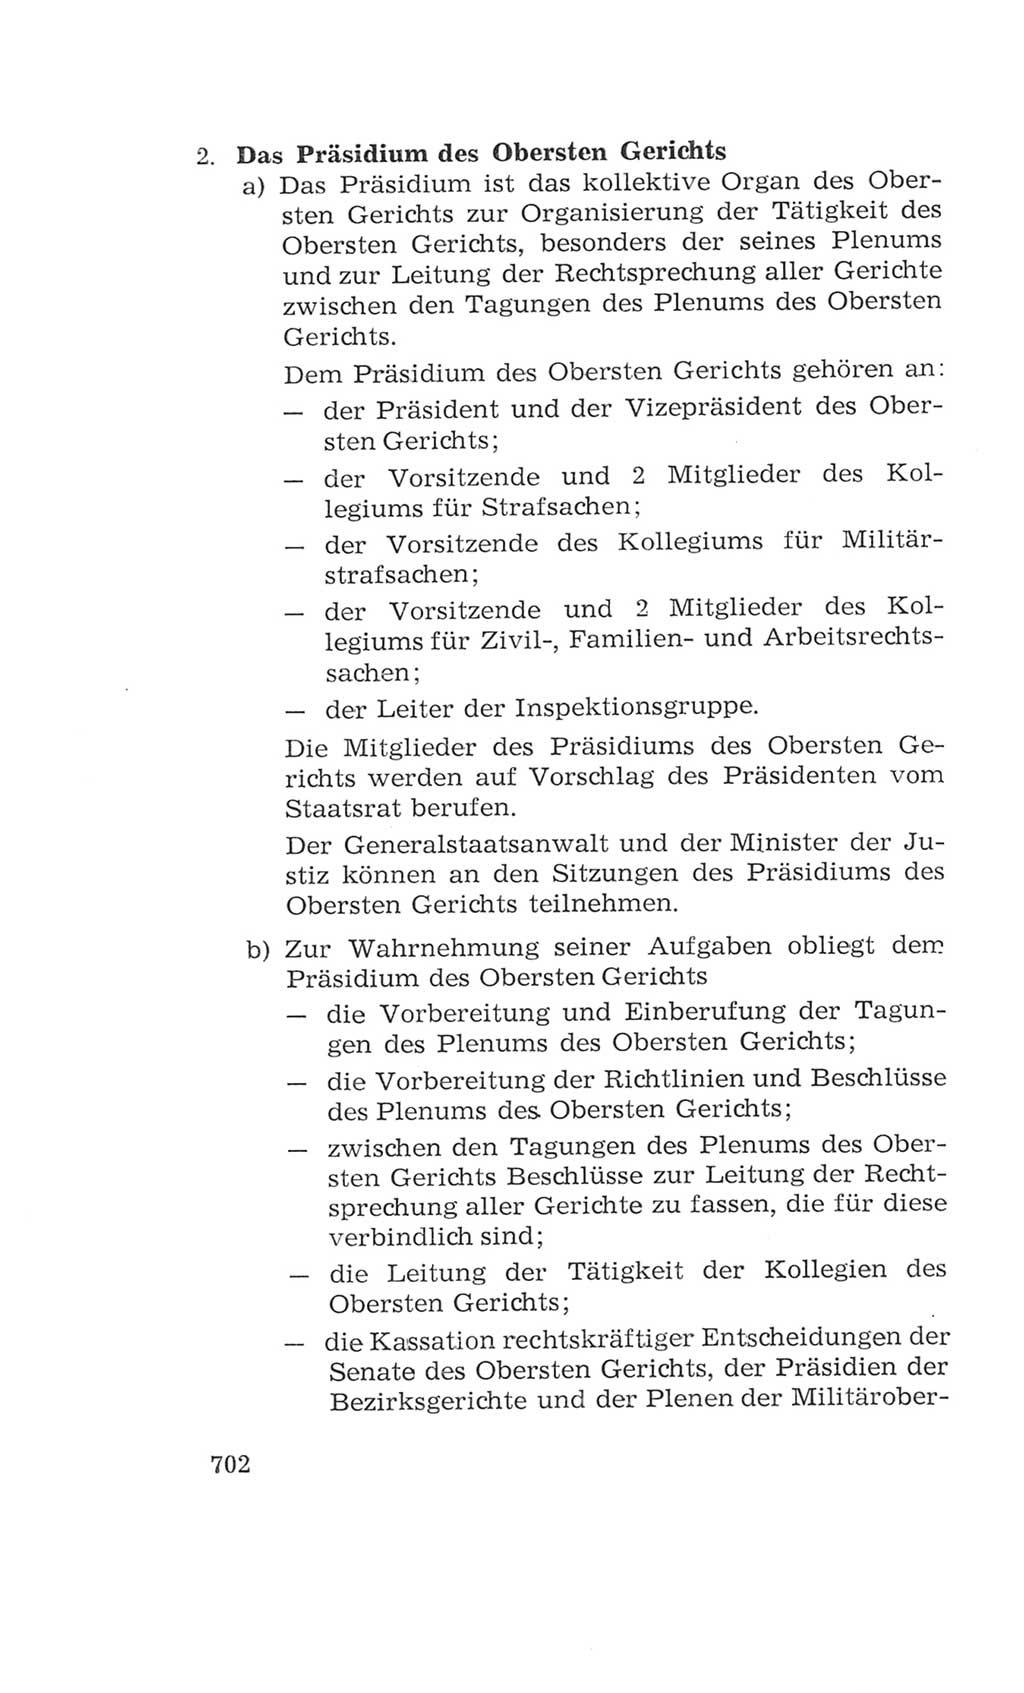 Volkskammer (VK) der Deutschen Demokratischen Republik (DDR), 4. Wahlperiode 1963-1967, Seite 702 (VK. DDR 4. WP. 1963-1967, S. 702)